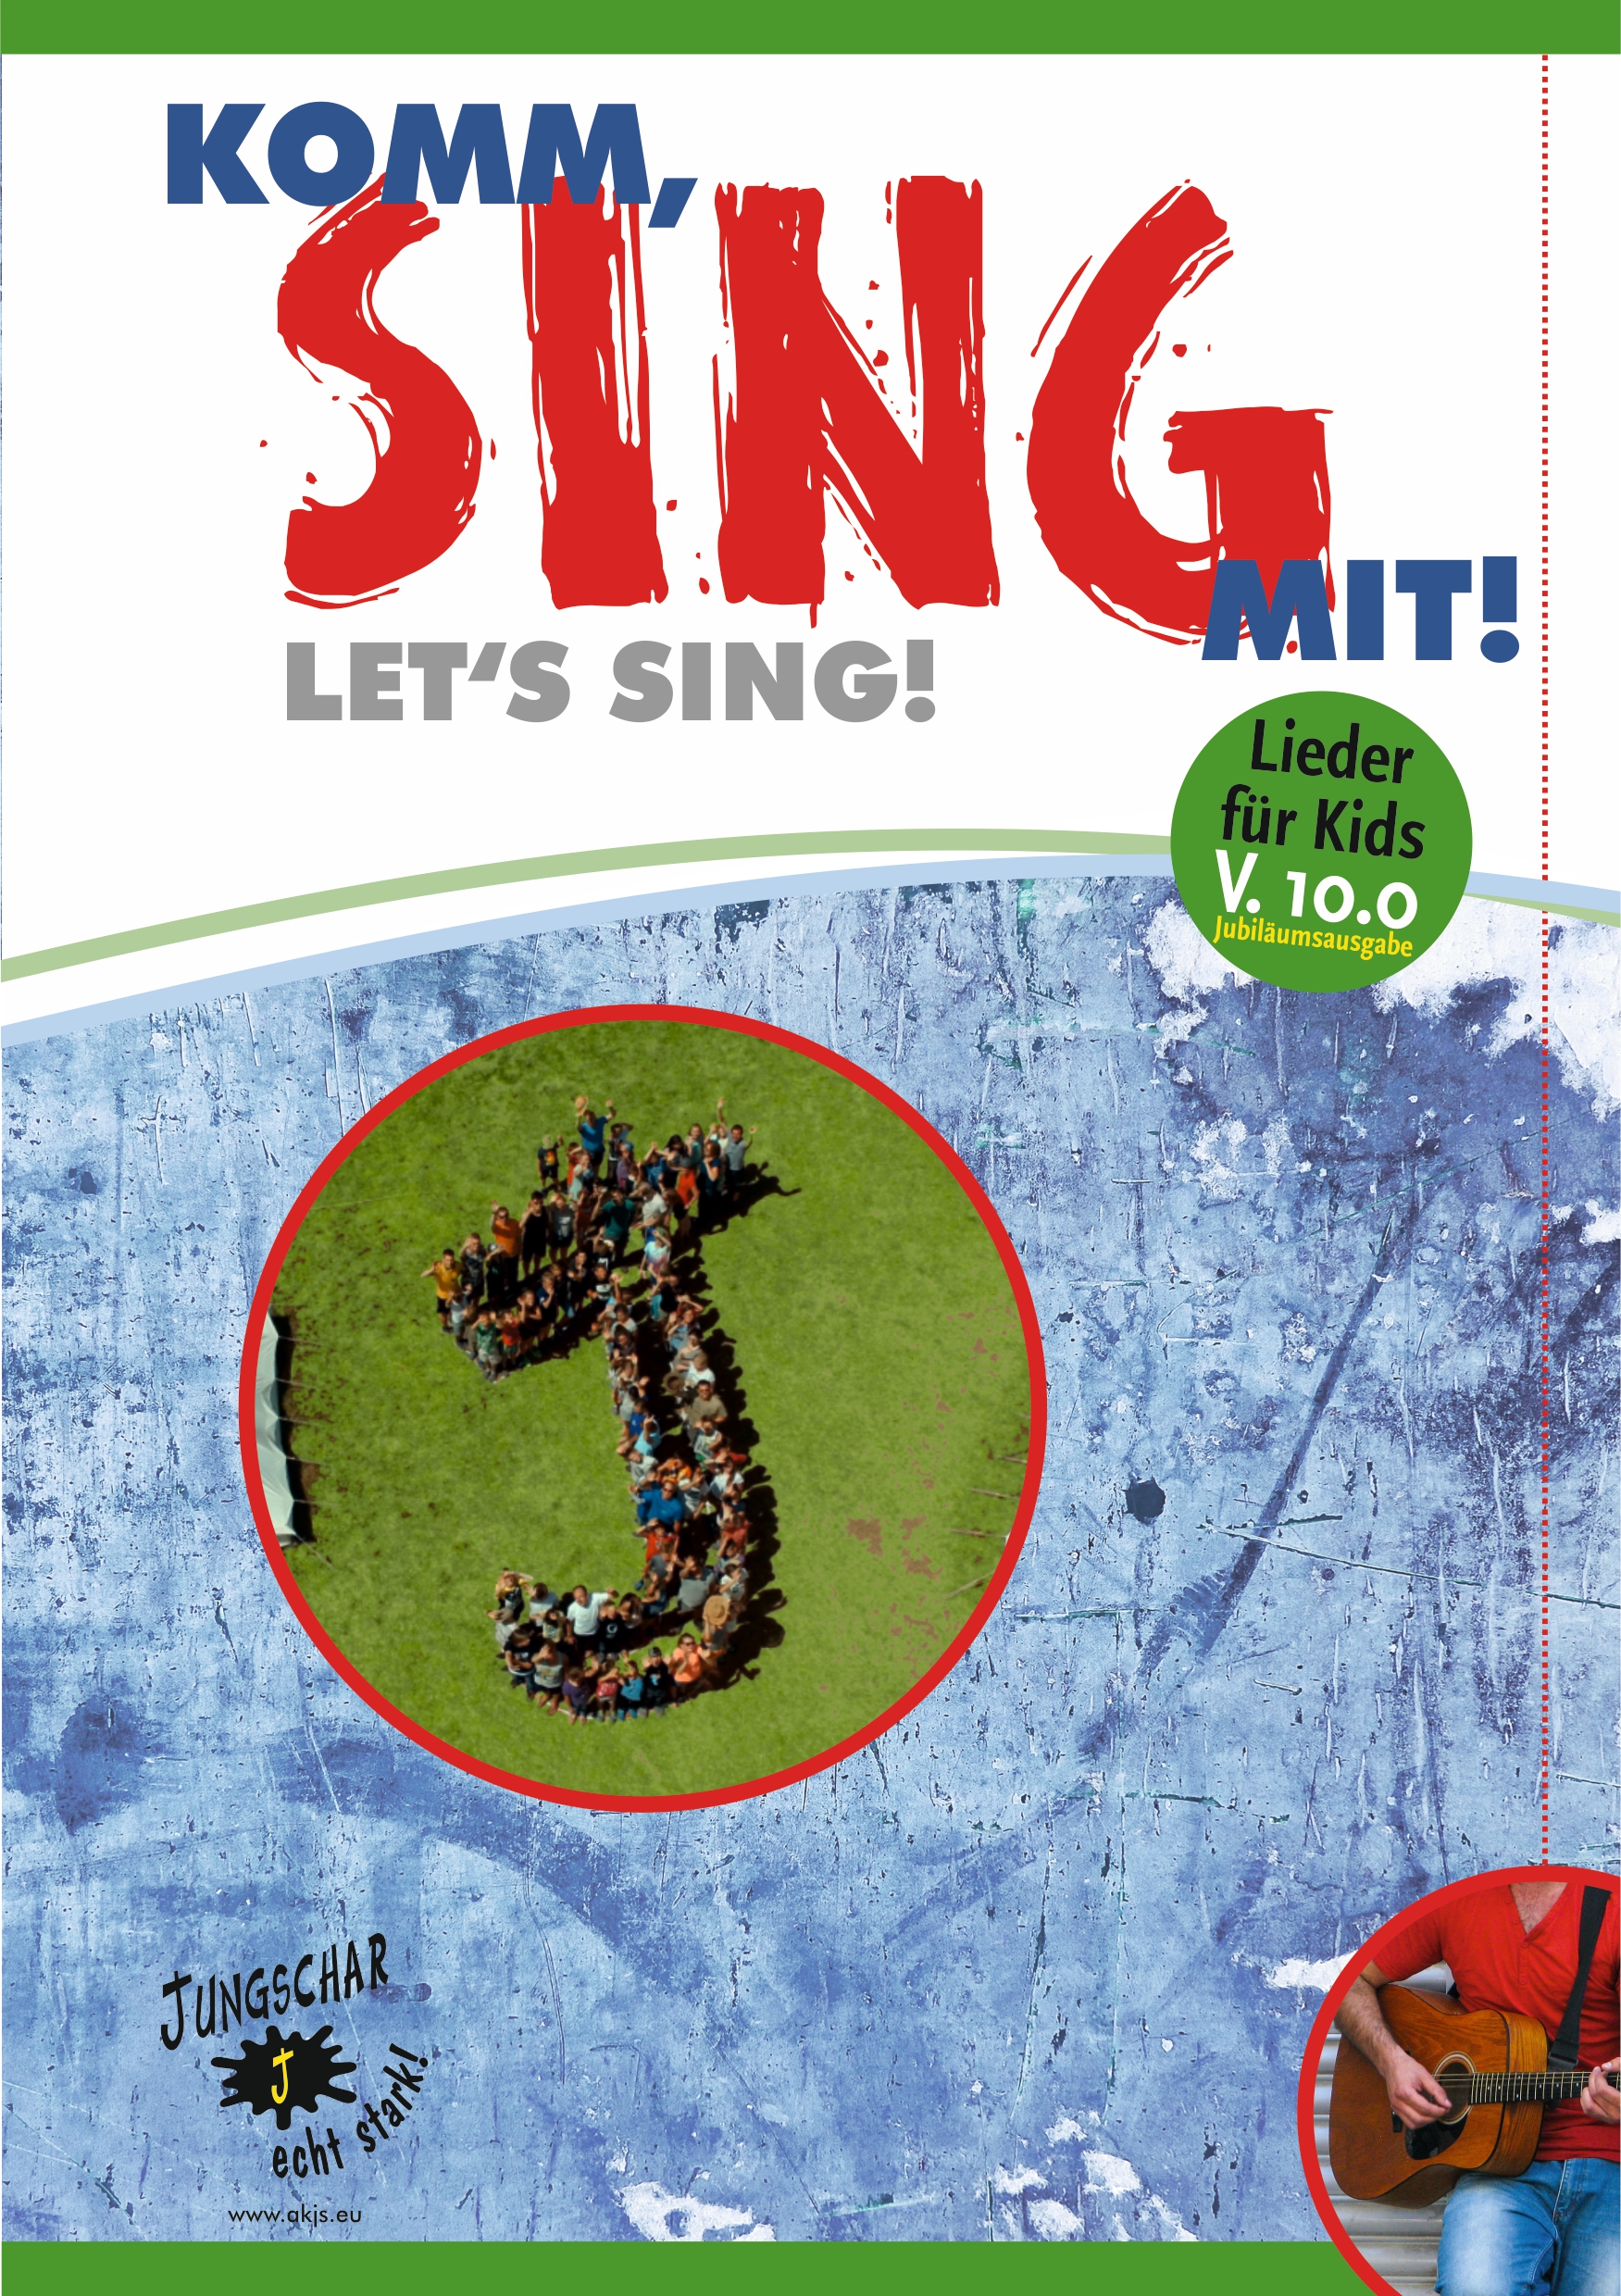 Komm, sing mit! - Liederheft Textausgabe 2021